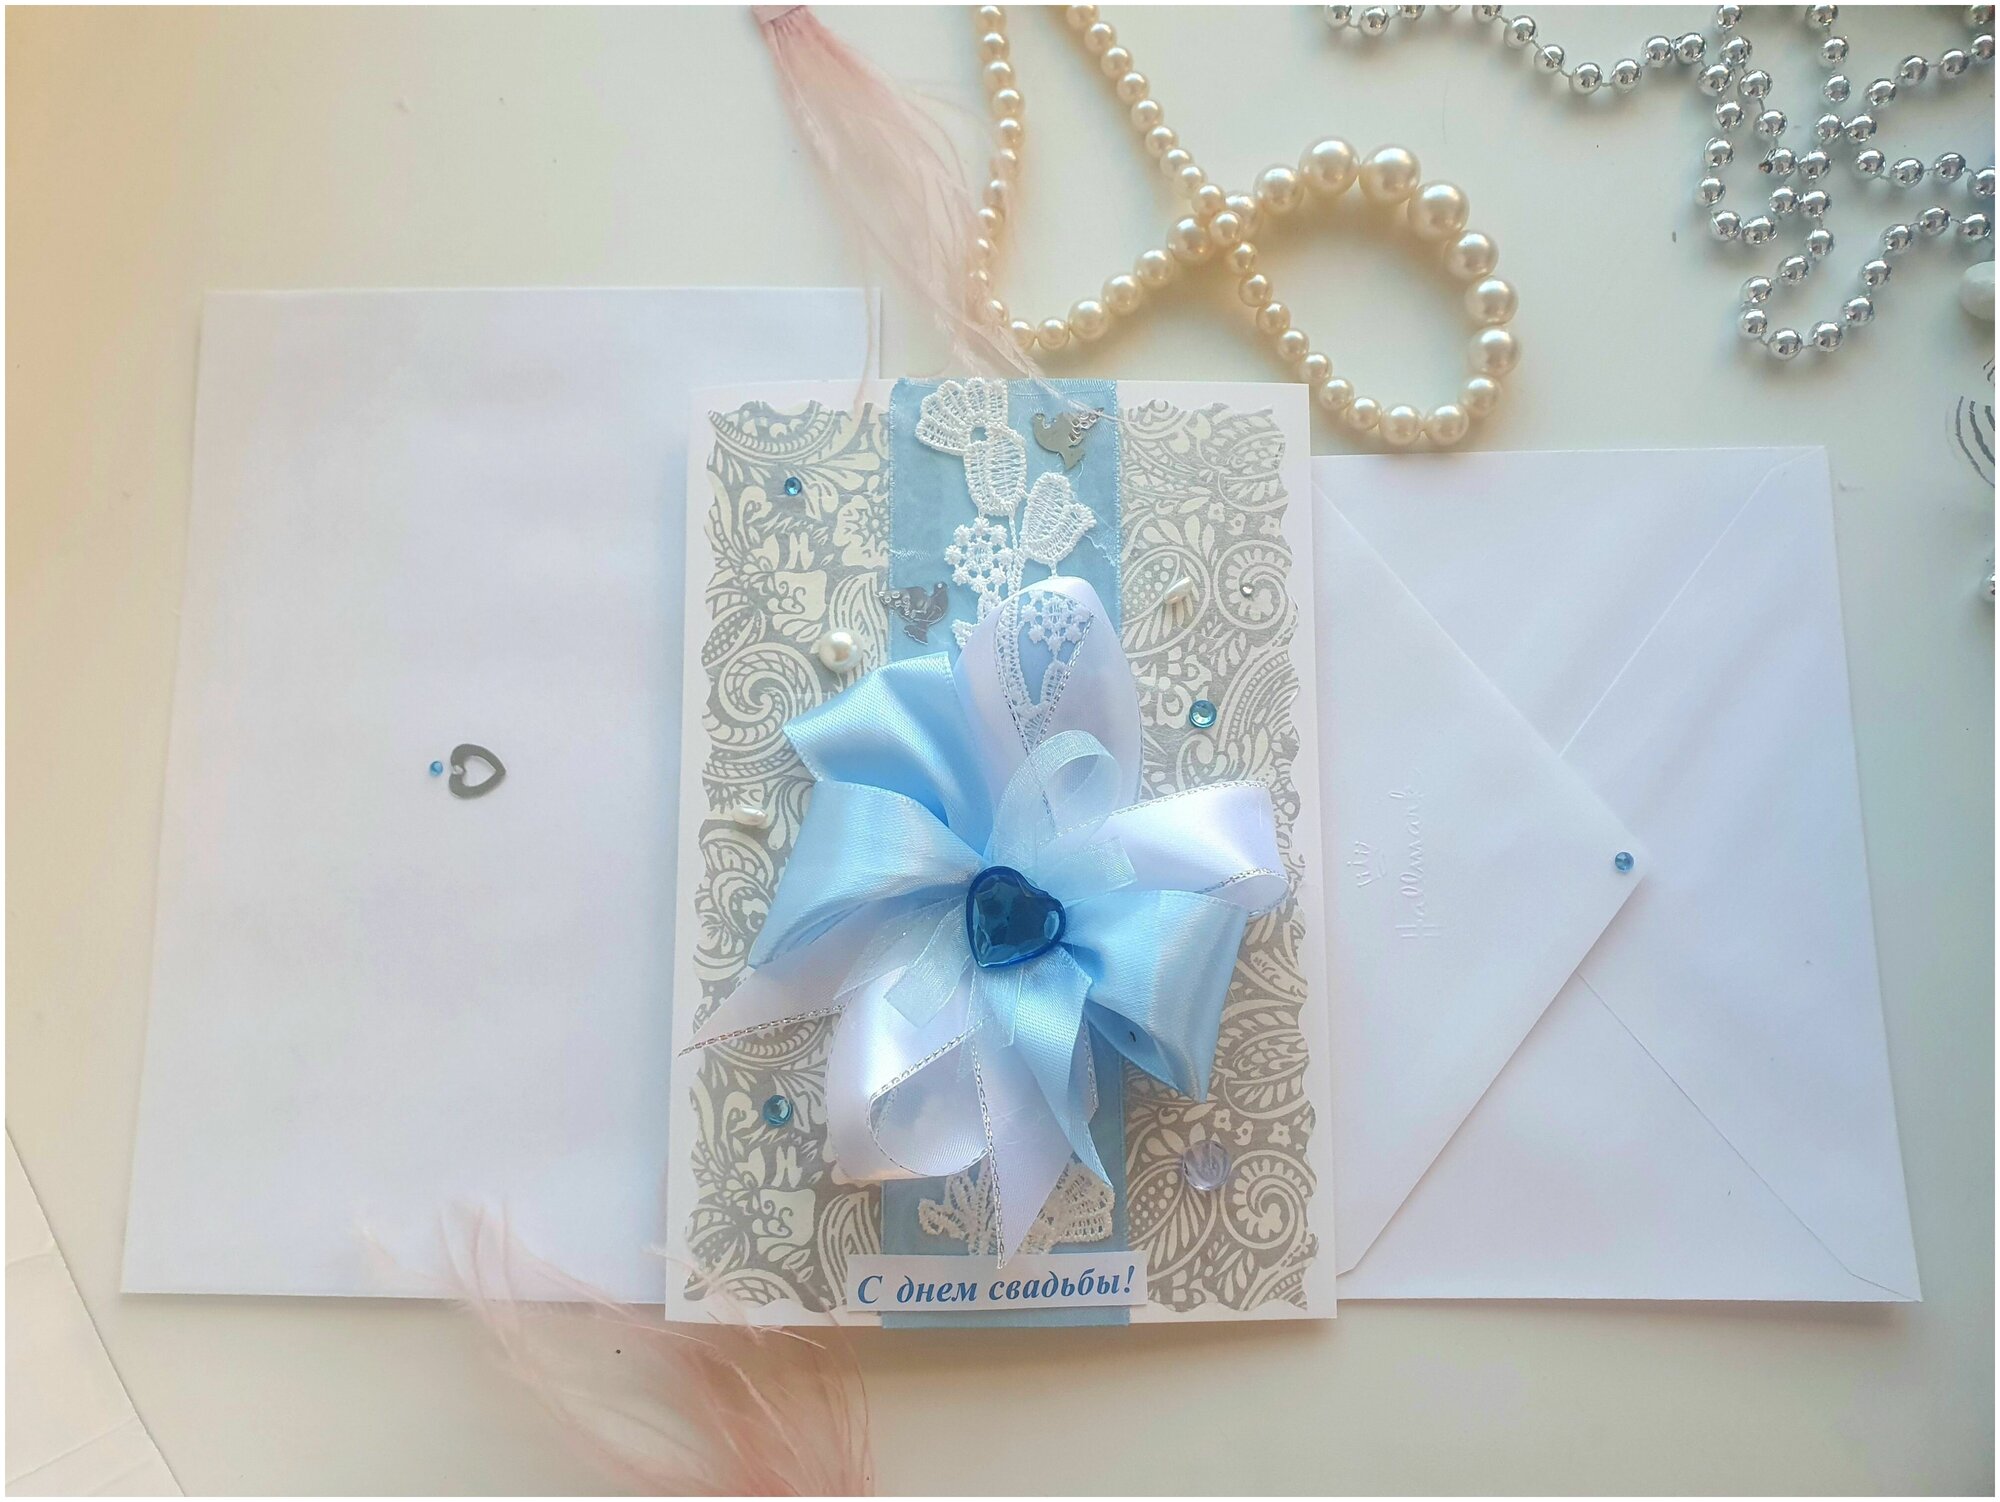 Открытка дизайнерская "С днем свадьбы!" Бело-голубая. Конверт и конверт для денег - в подарок.